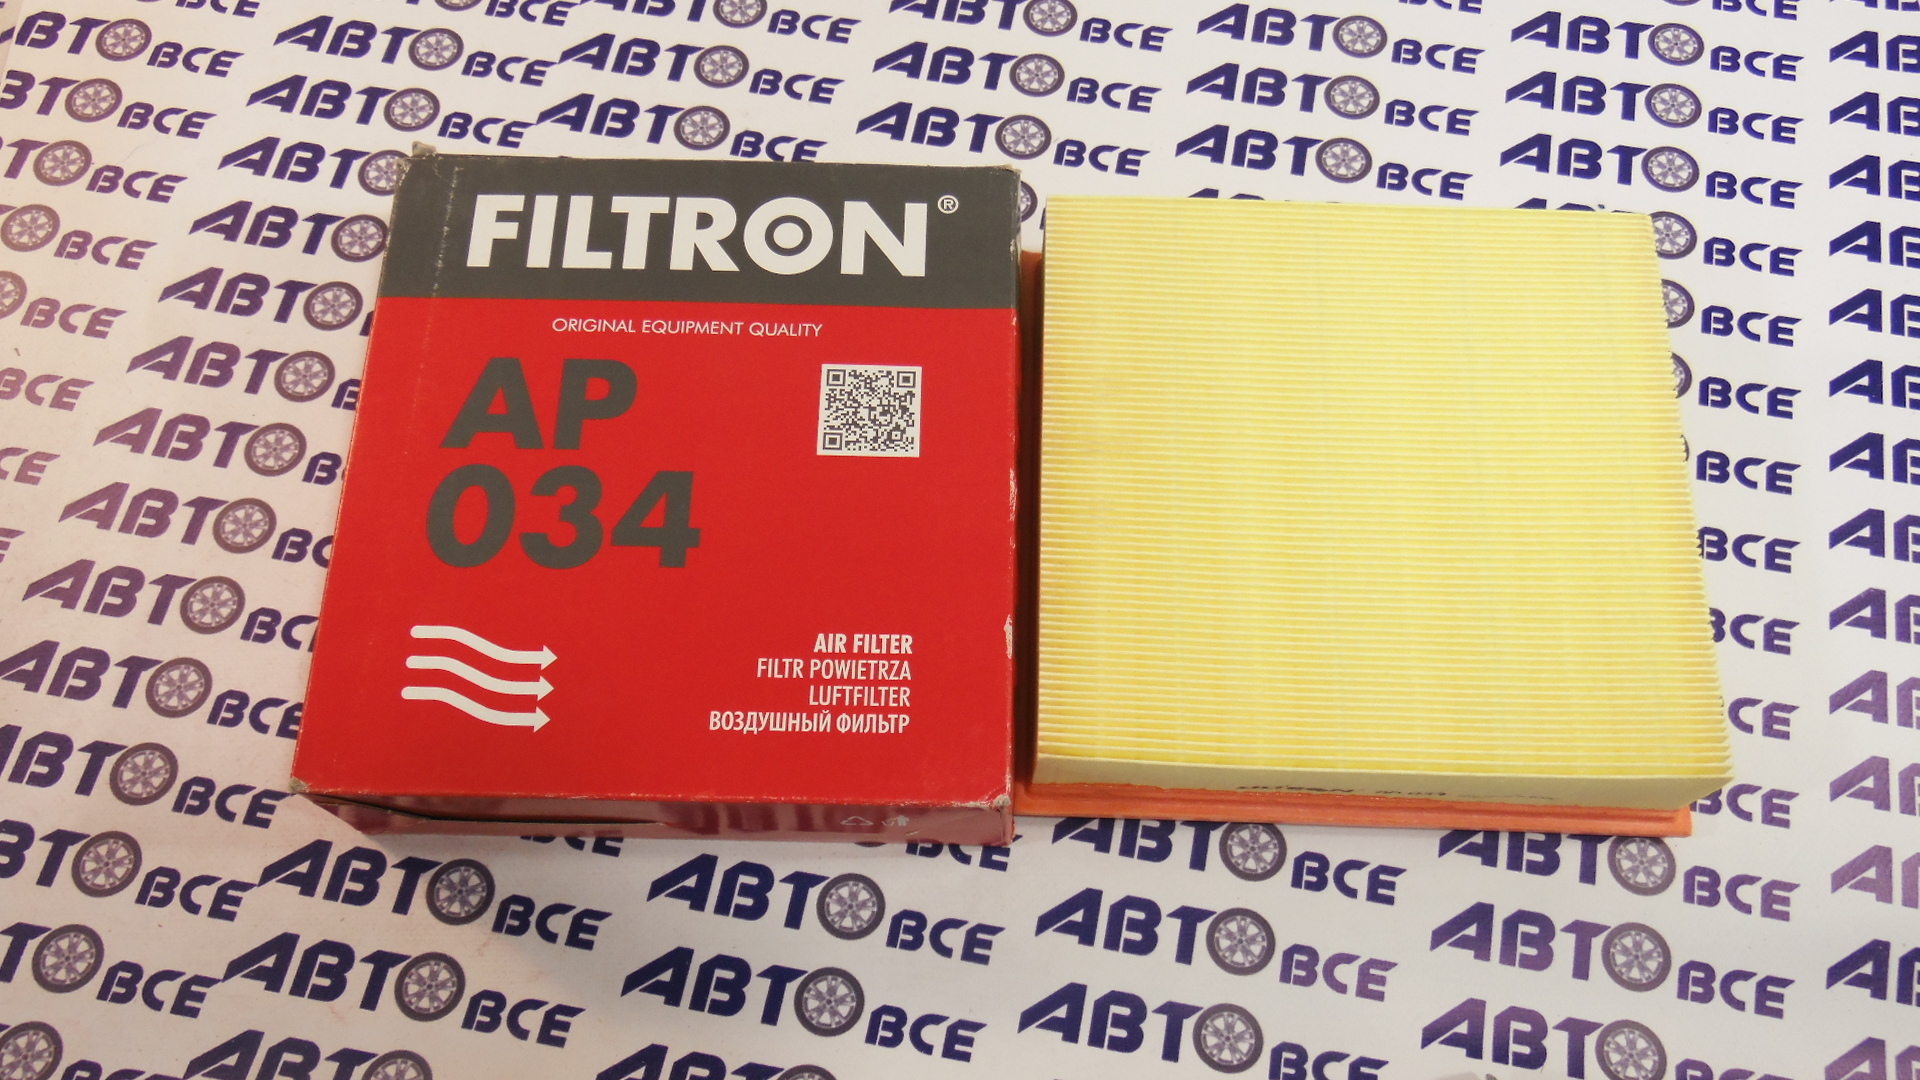 Фильтр воздушный AP034 FILTRON